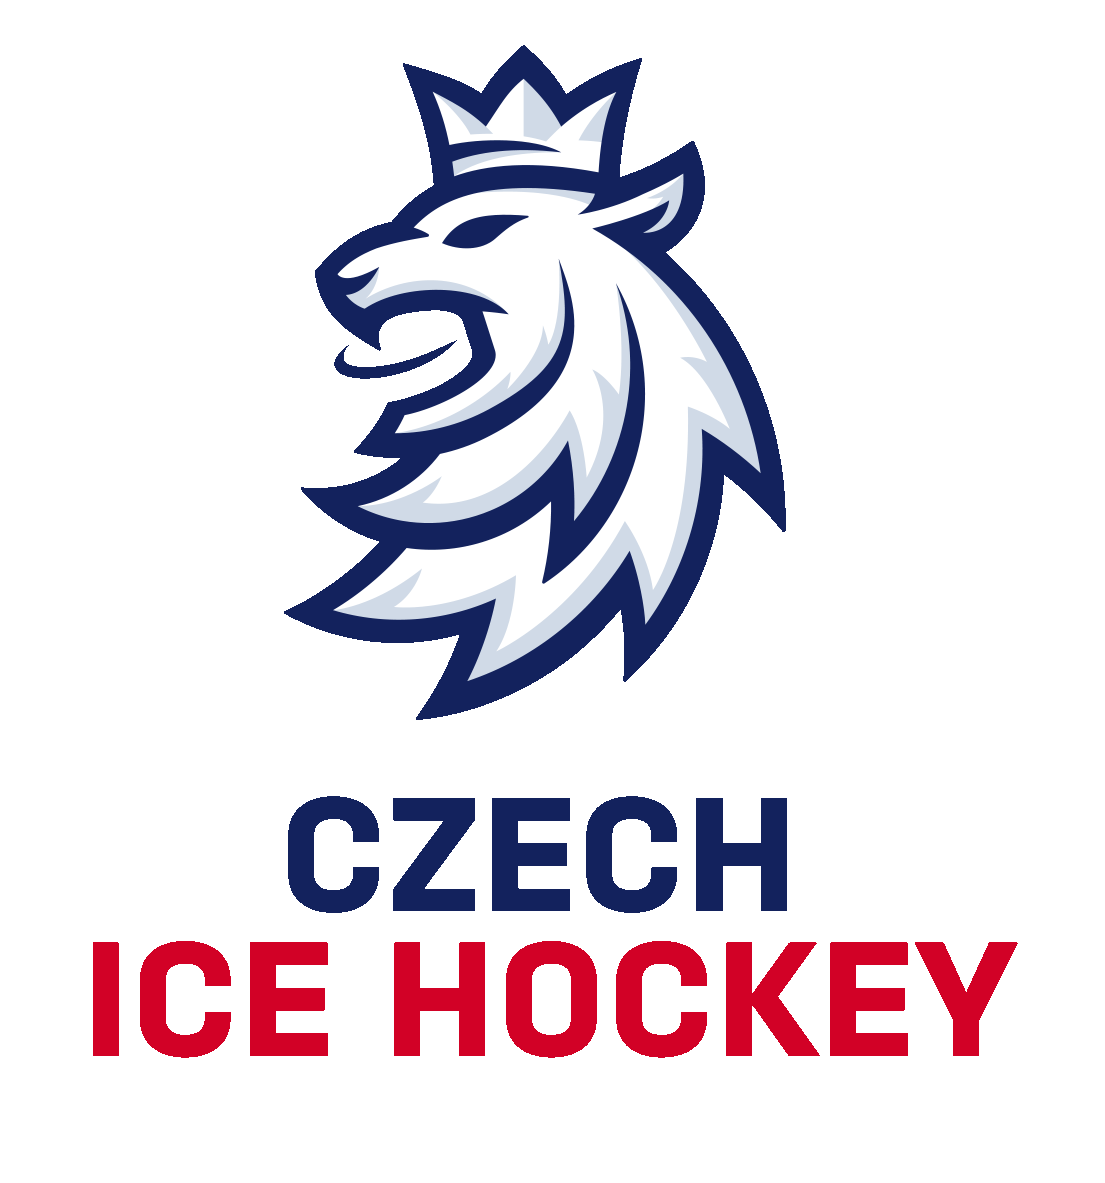 About Czech Ice Hockey Český hokej